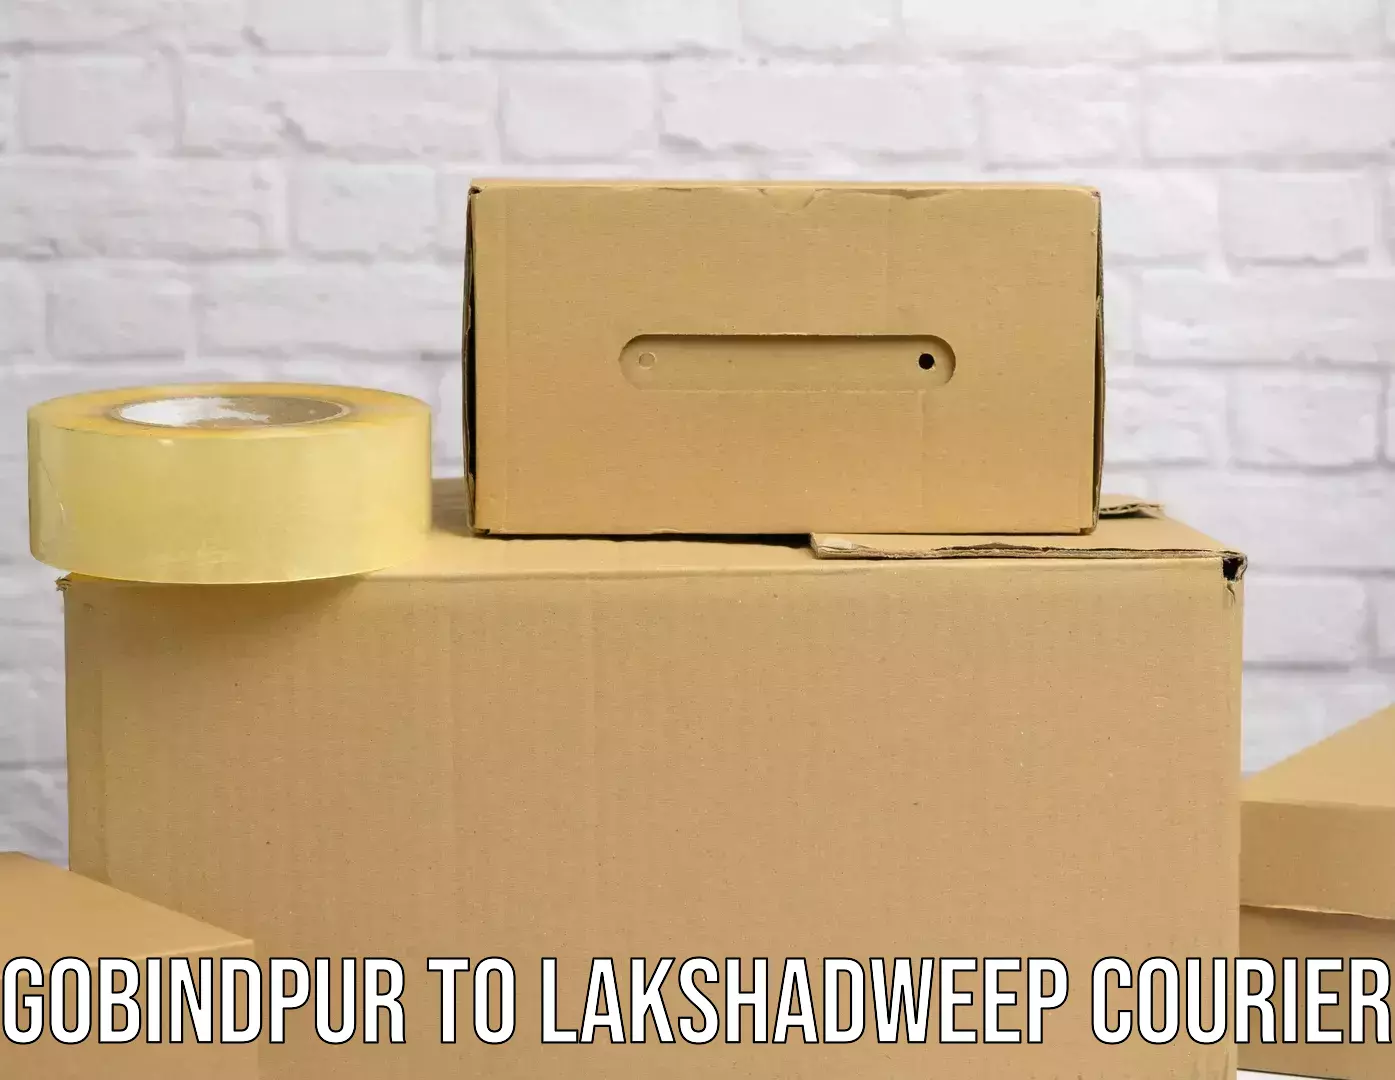 Express mail service Gobindpur to Lakshadweep